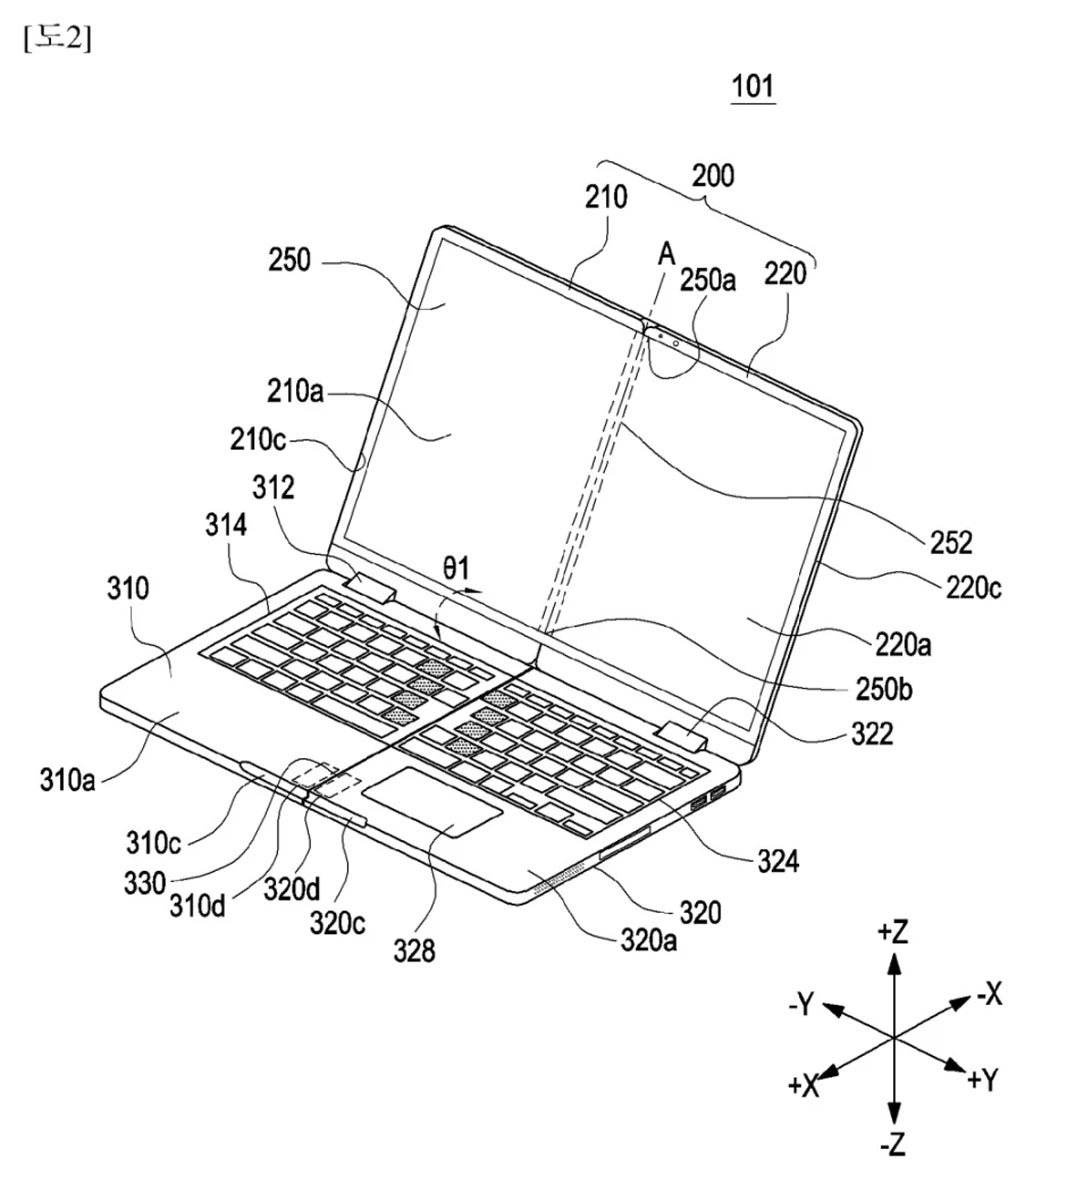 ثبت اختراع لپ تاپ های دوبار تاشو